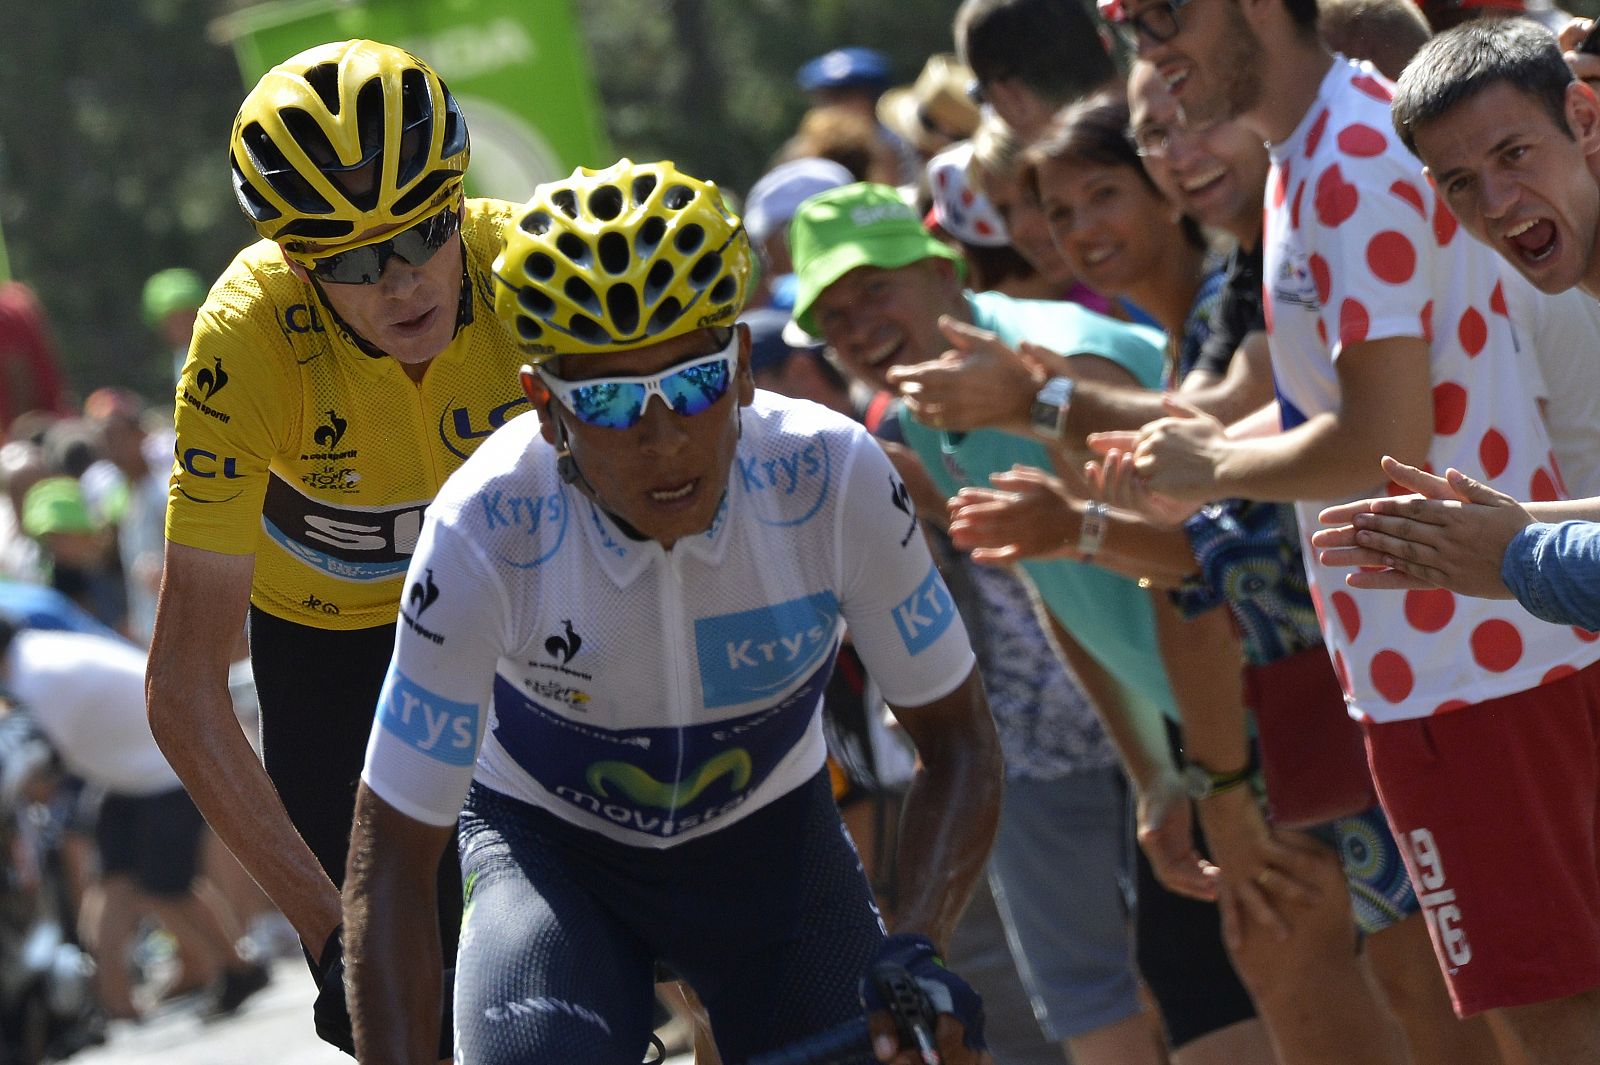 Imagen de Chris Froome a rueda de Nairo Quintana durante la 14ª etapa del Tour de Francia.